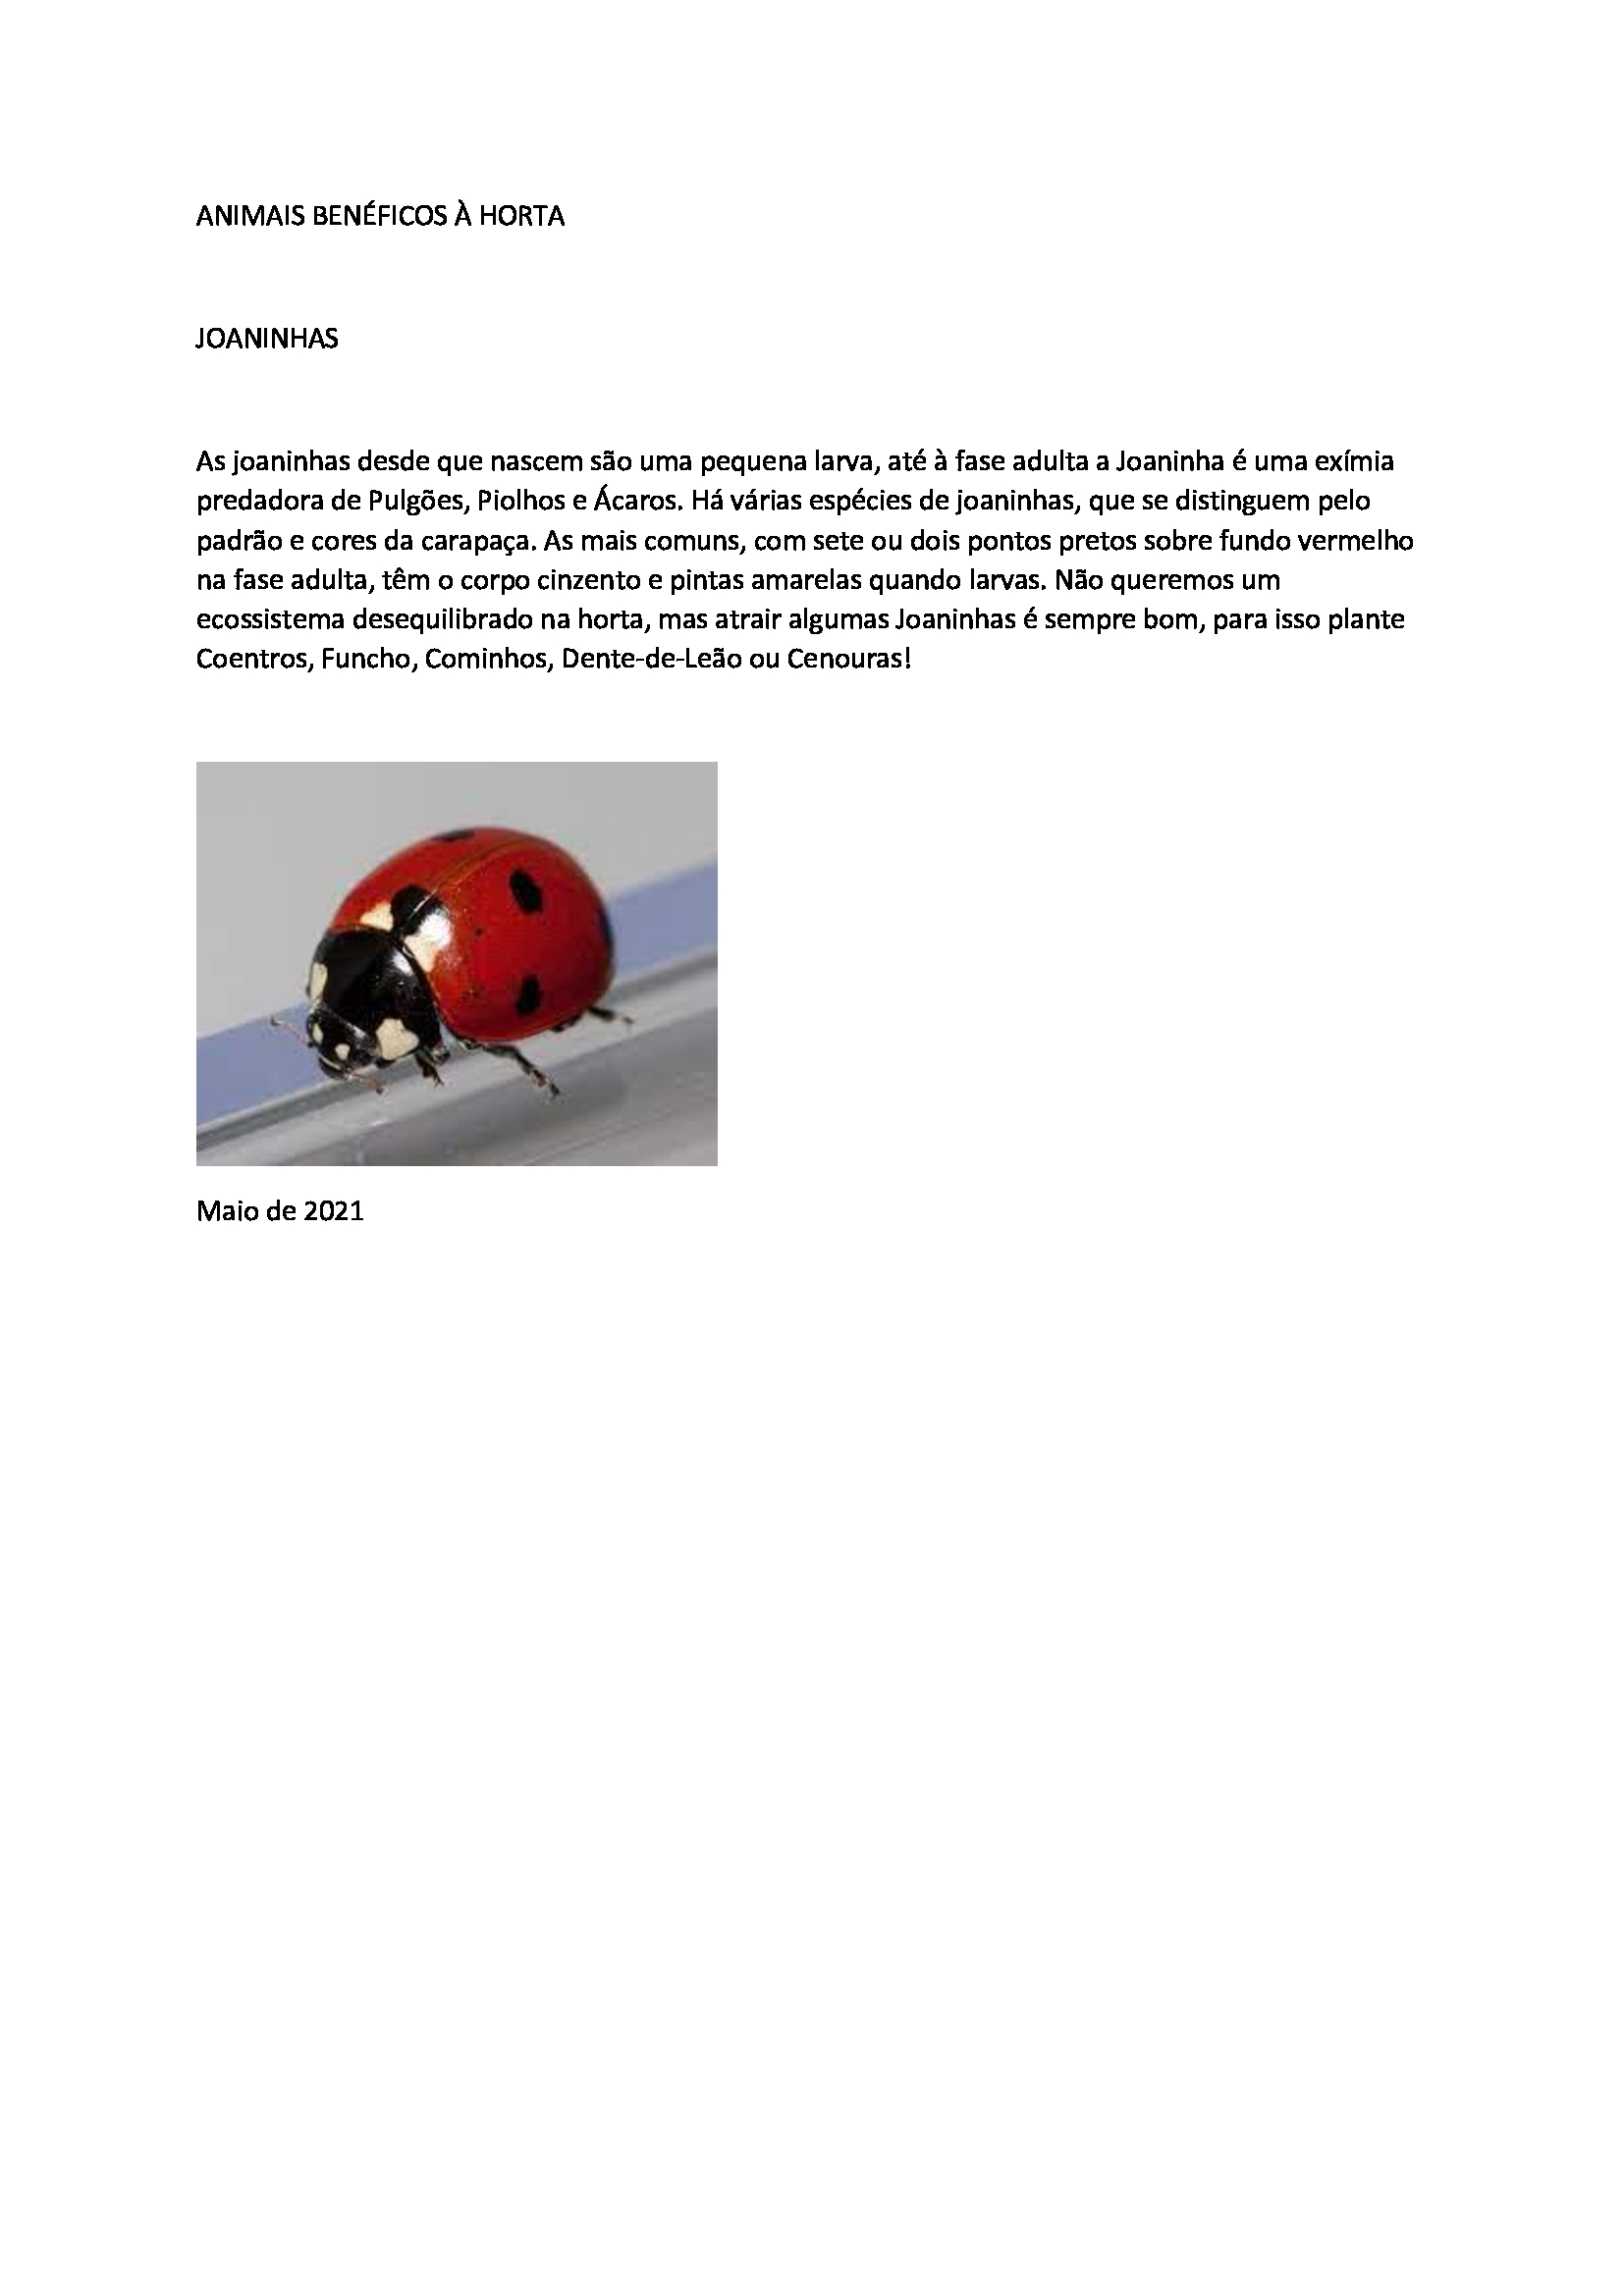 inseto benéfico à horta pedagógica e biológica: joaninha